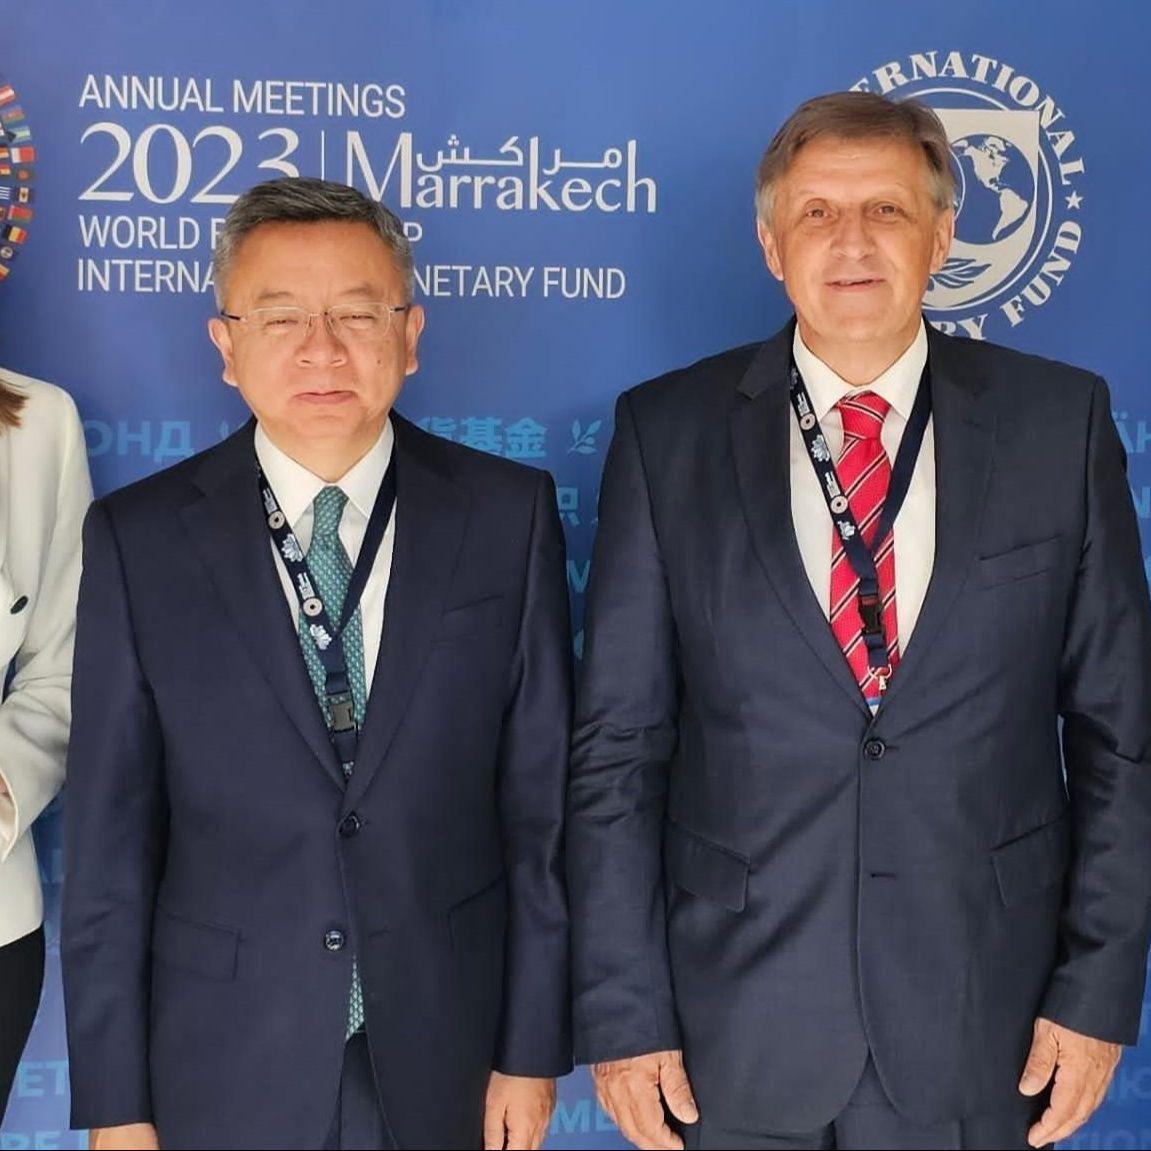 Guverner Centralne banke BiH na Godišnjem zasjedanju MMF-a i Svjetske banke u Maroku